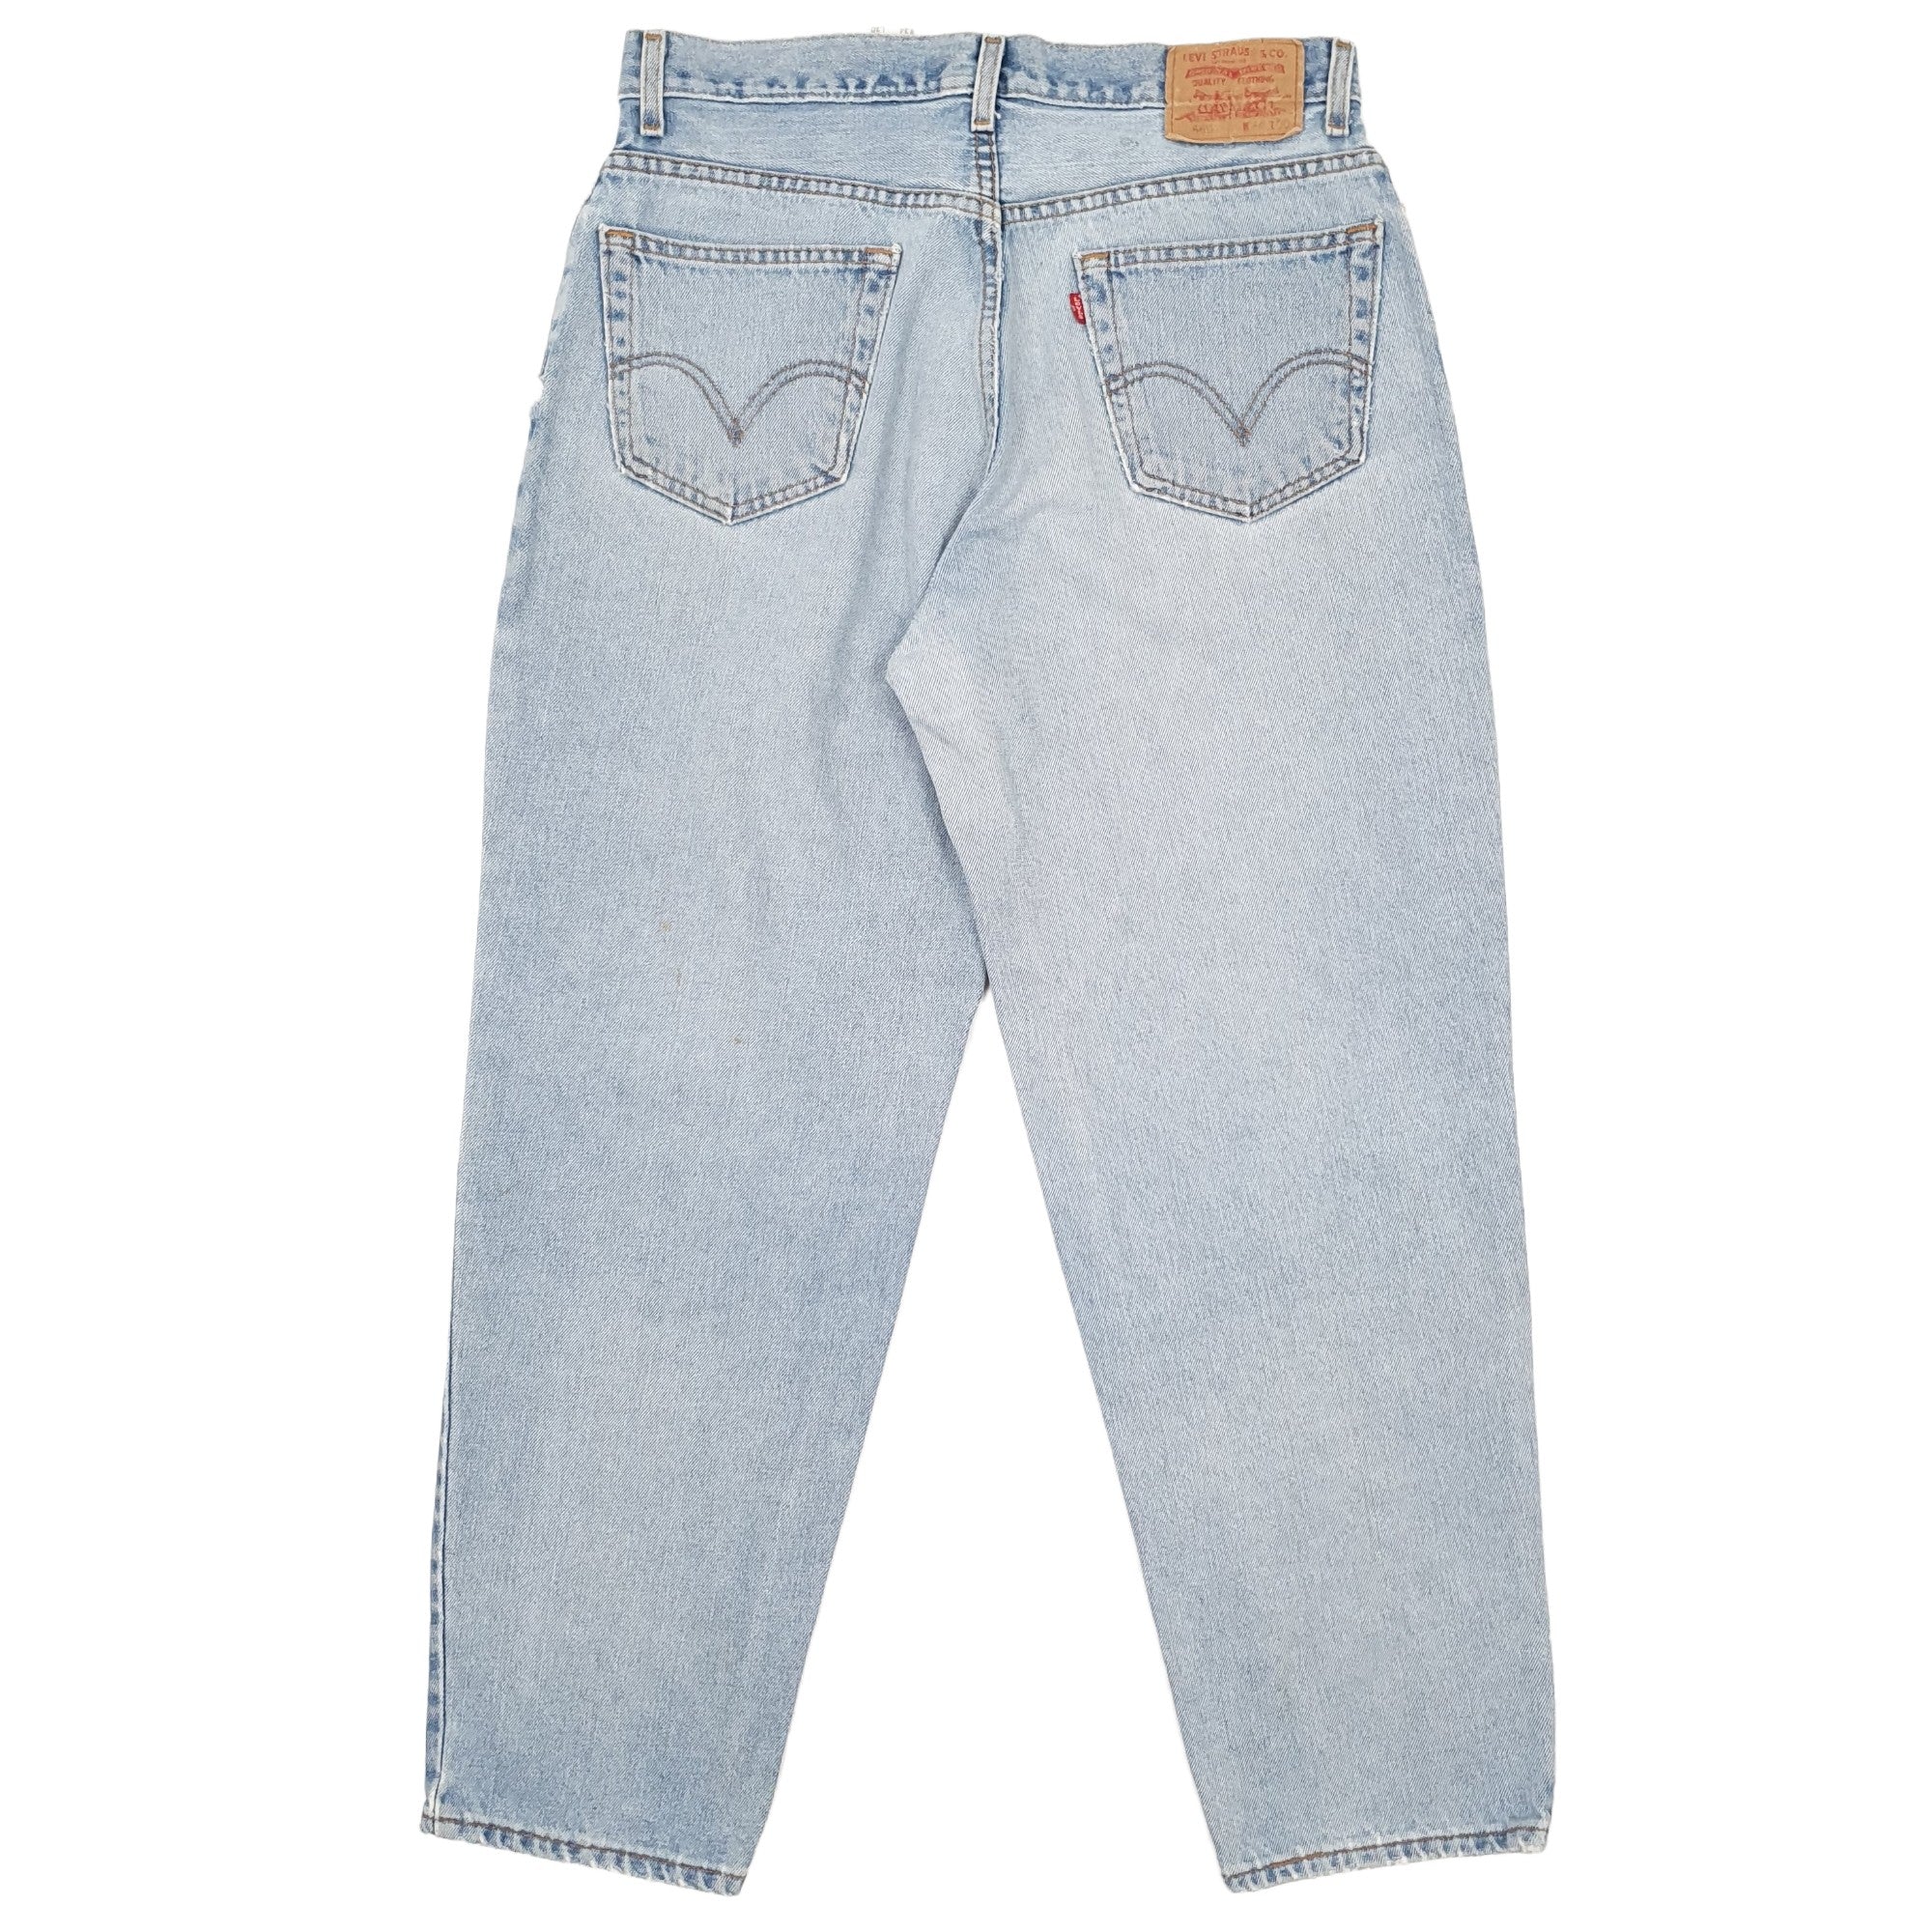 Mens Levis 560 Loose Fit Blue Jeans W34 L30 – Bundl Clothing